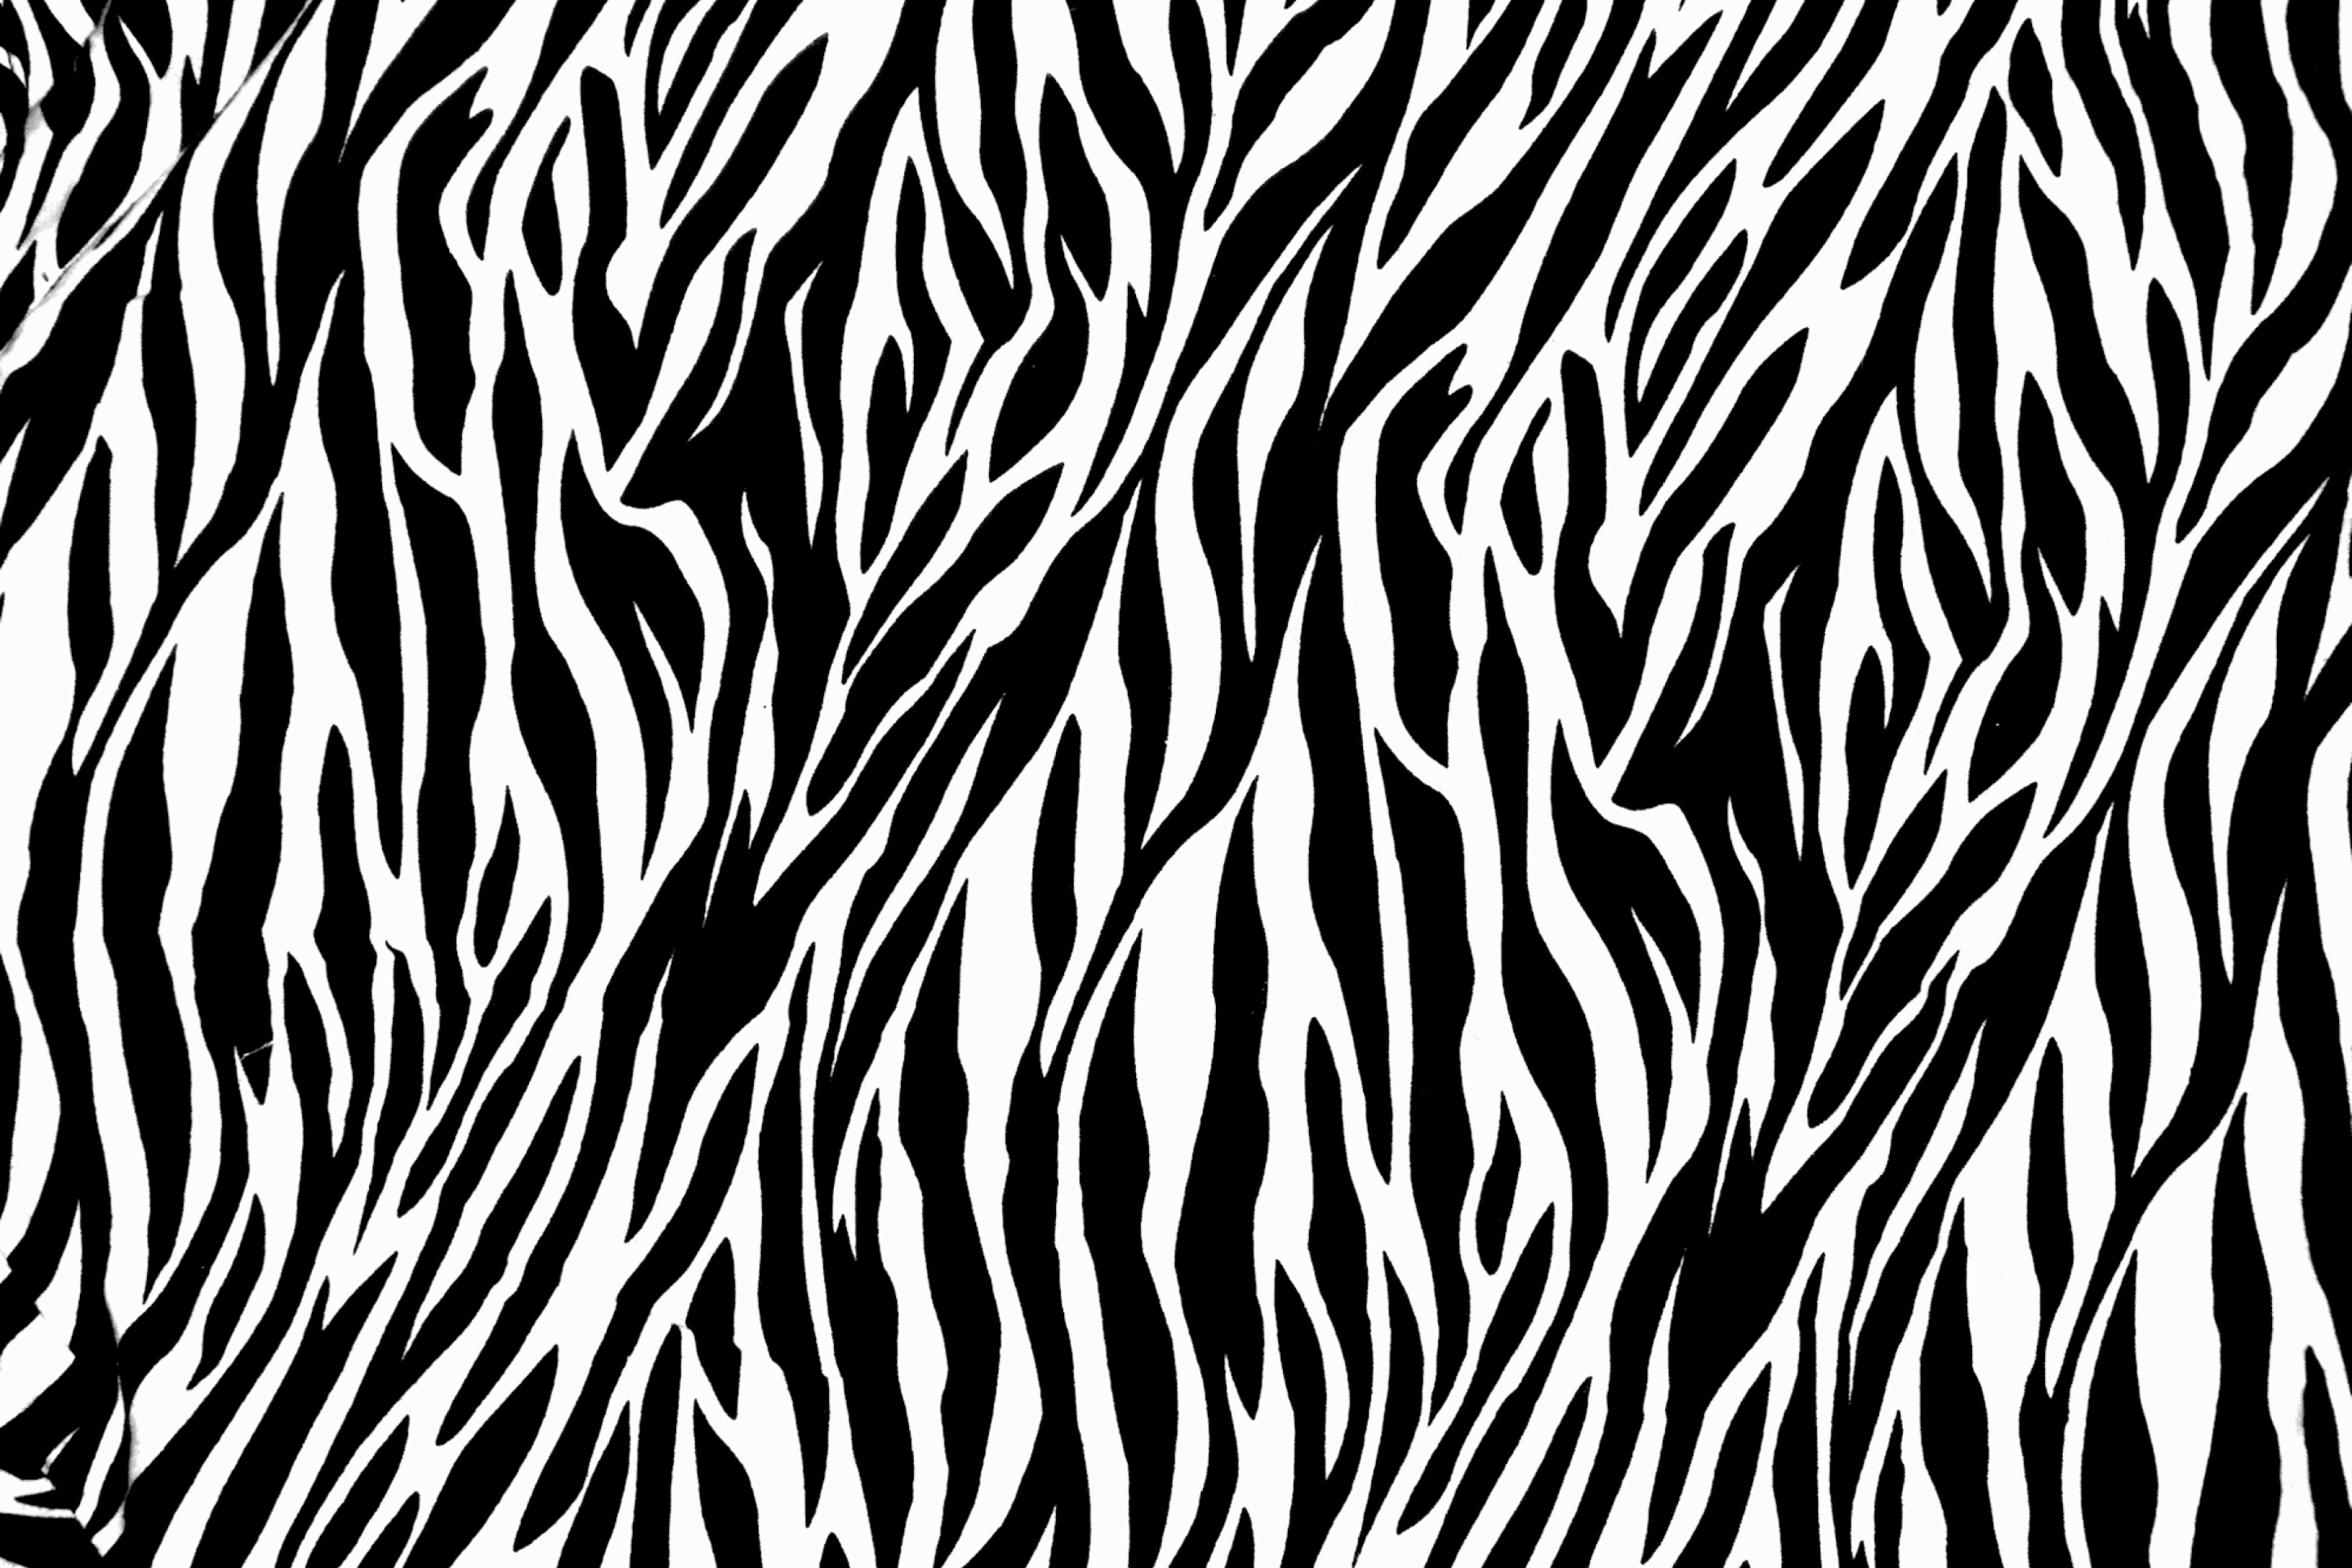 Das Zebra Print Wallpaper 2880x1920